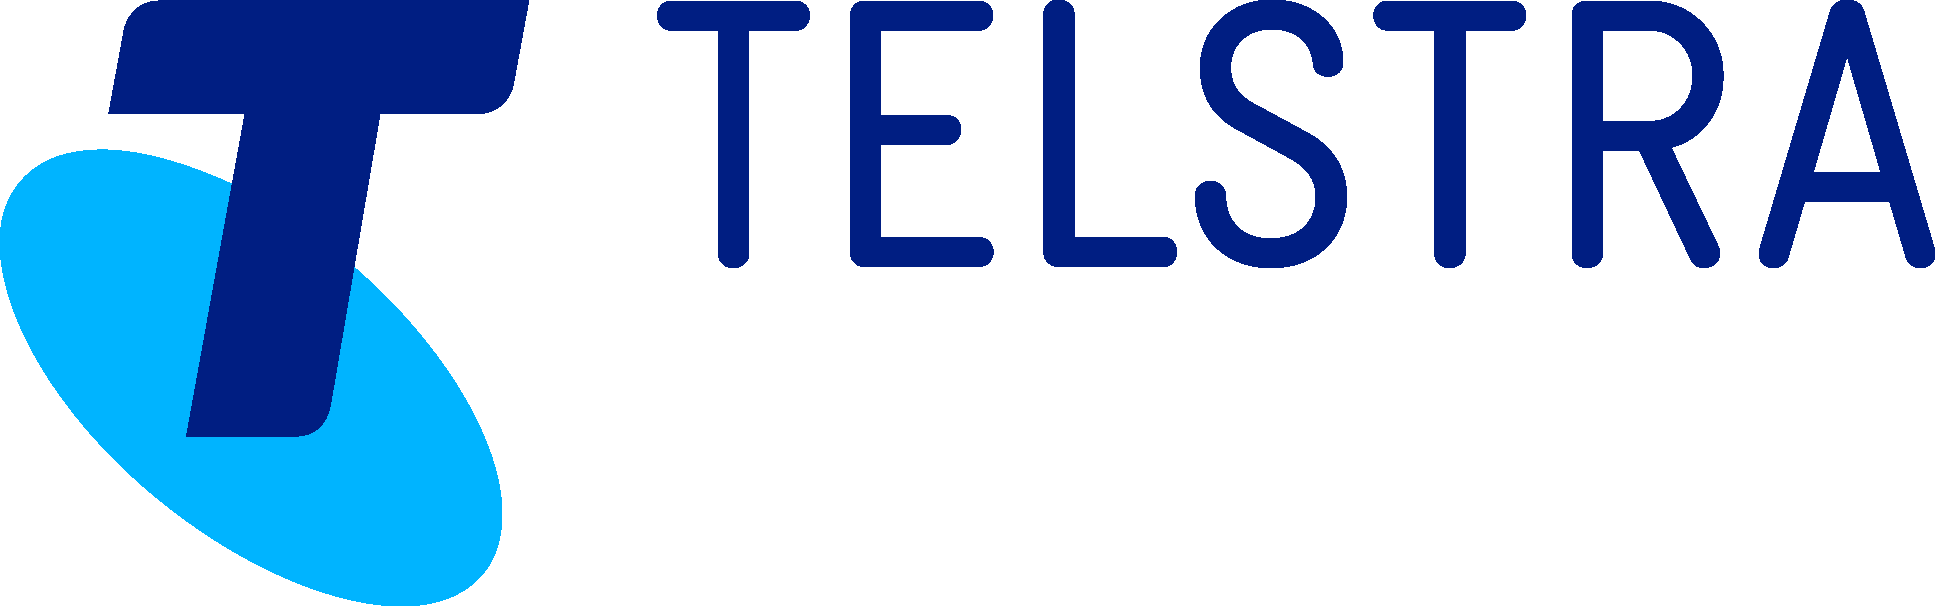 Telstra Logo | 02 png